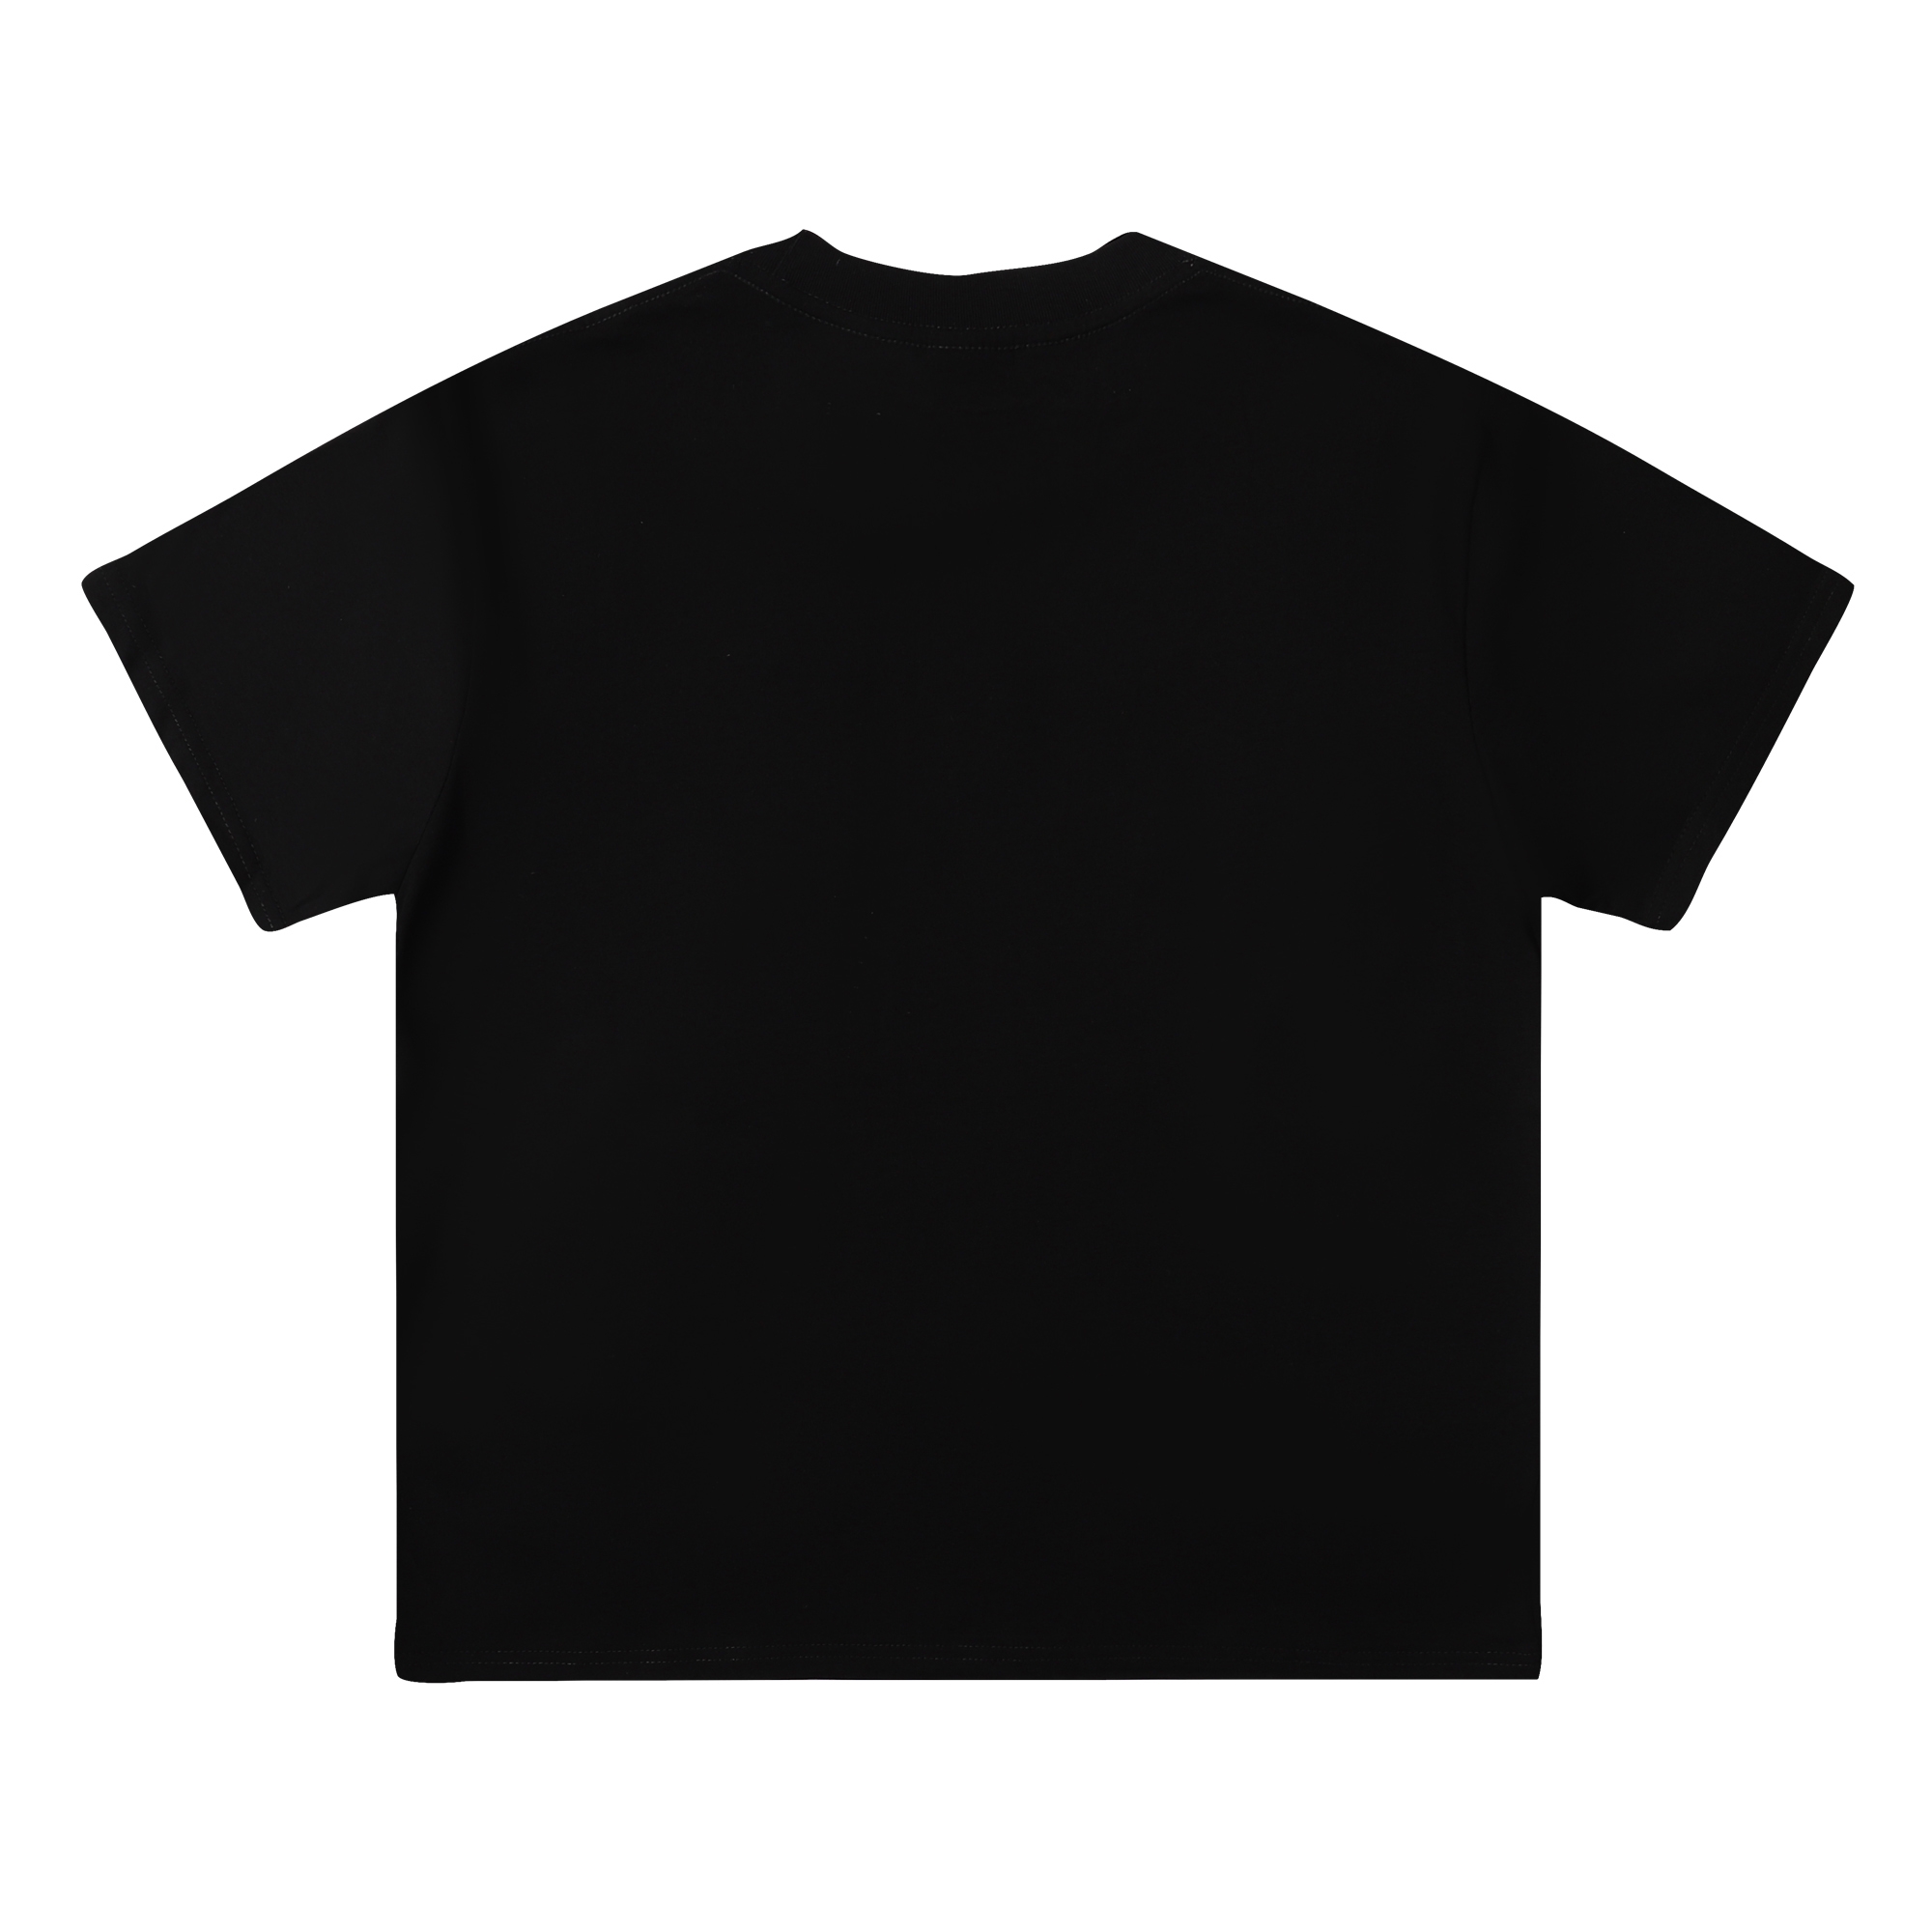 ステューシーtシャツ値段偽物 トップス 純綿 短袖 ロゴプリント 激安品 ファッション 大人気 2色可選_5